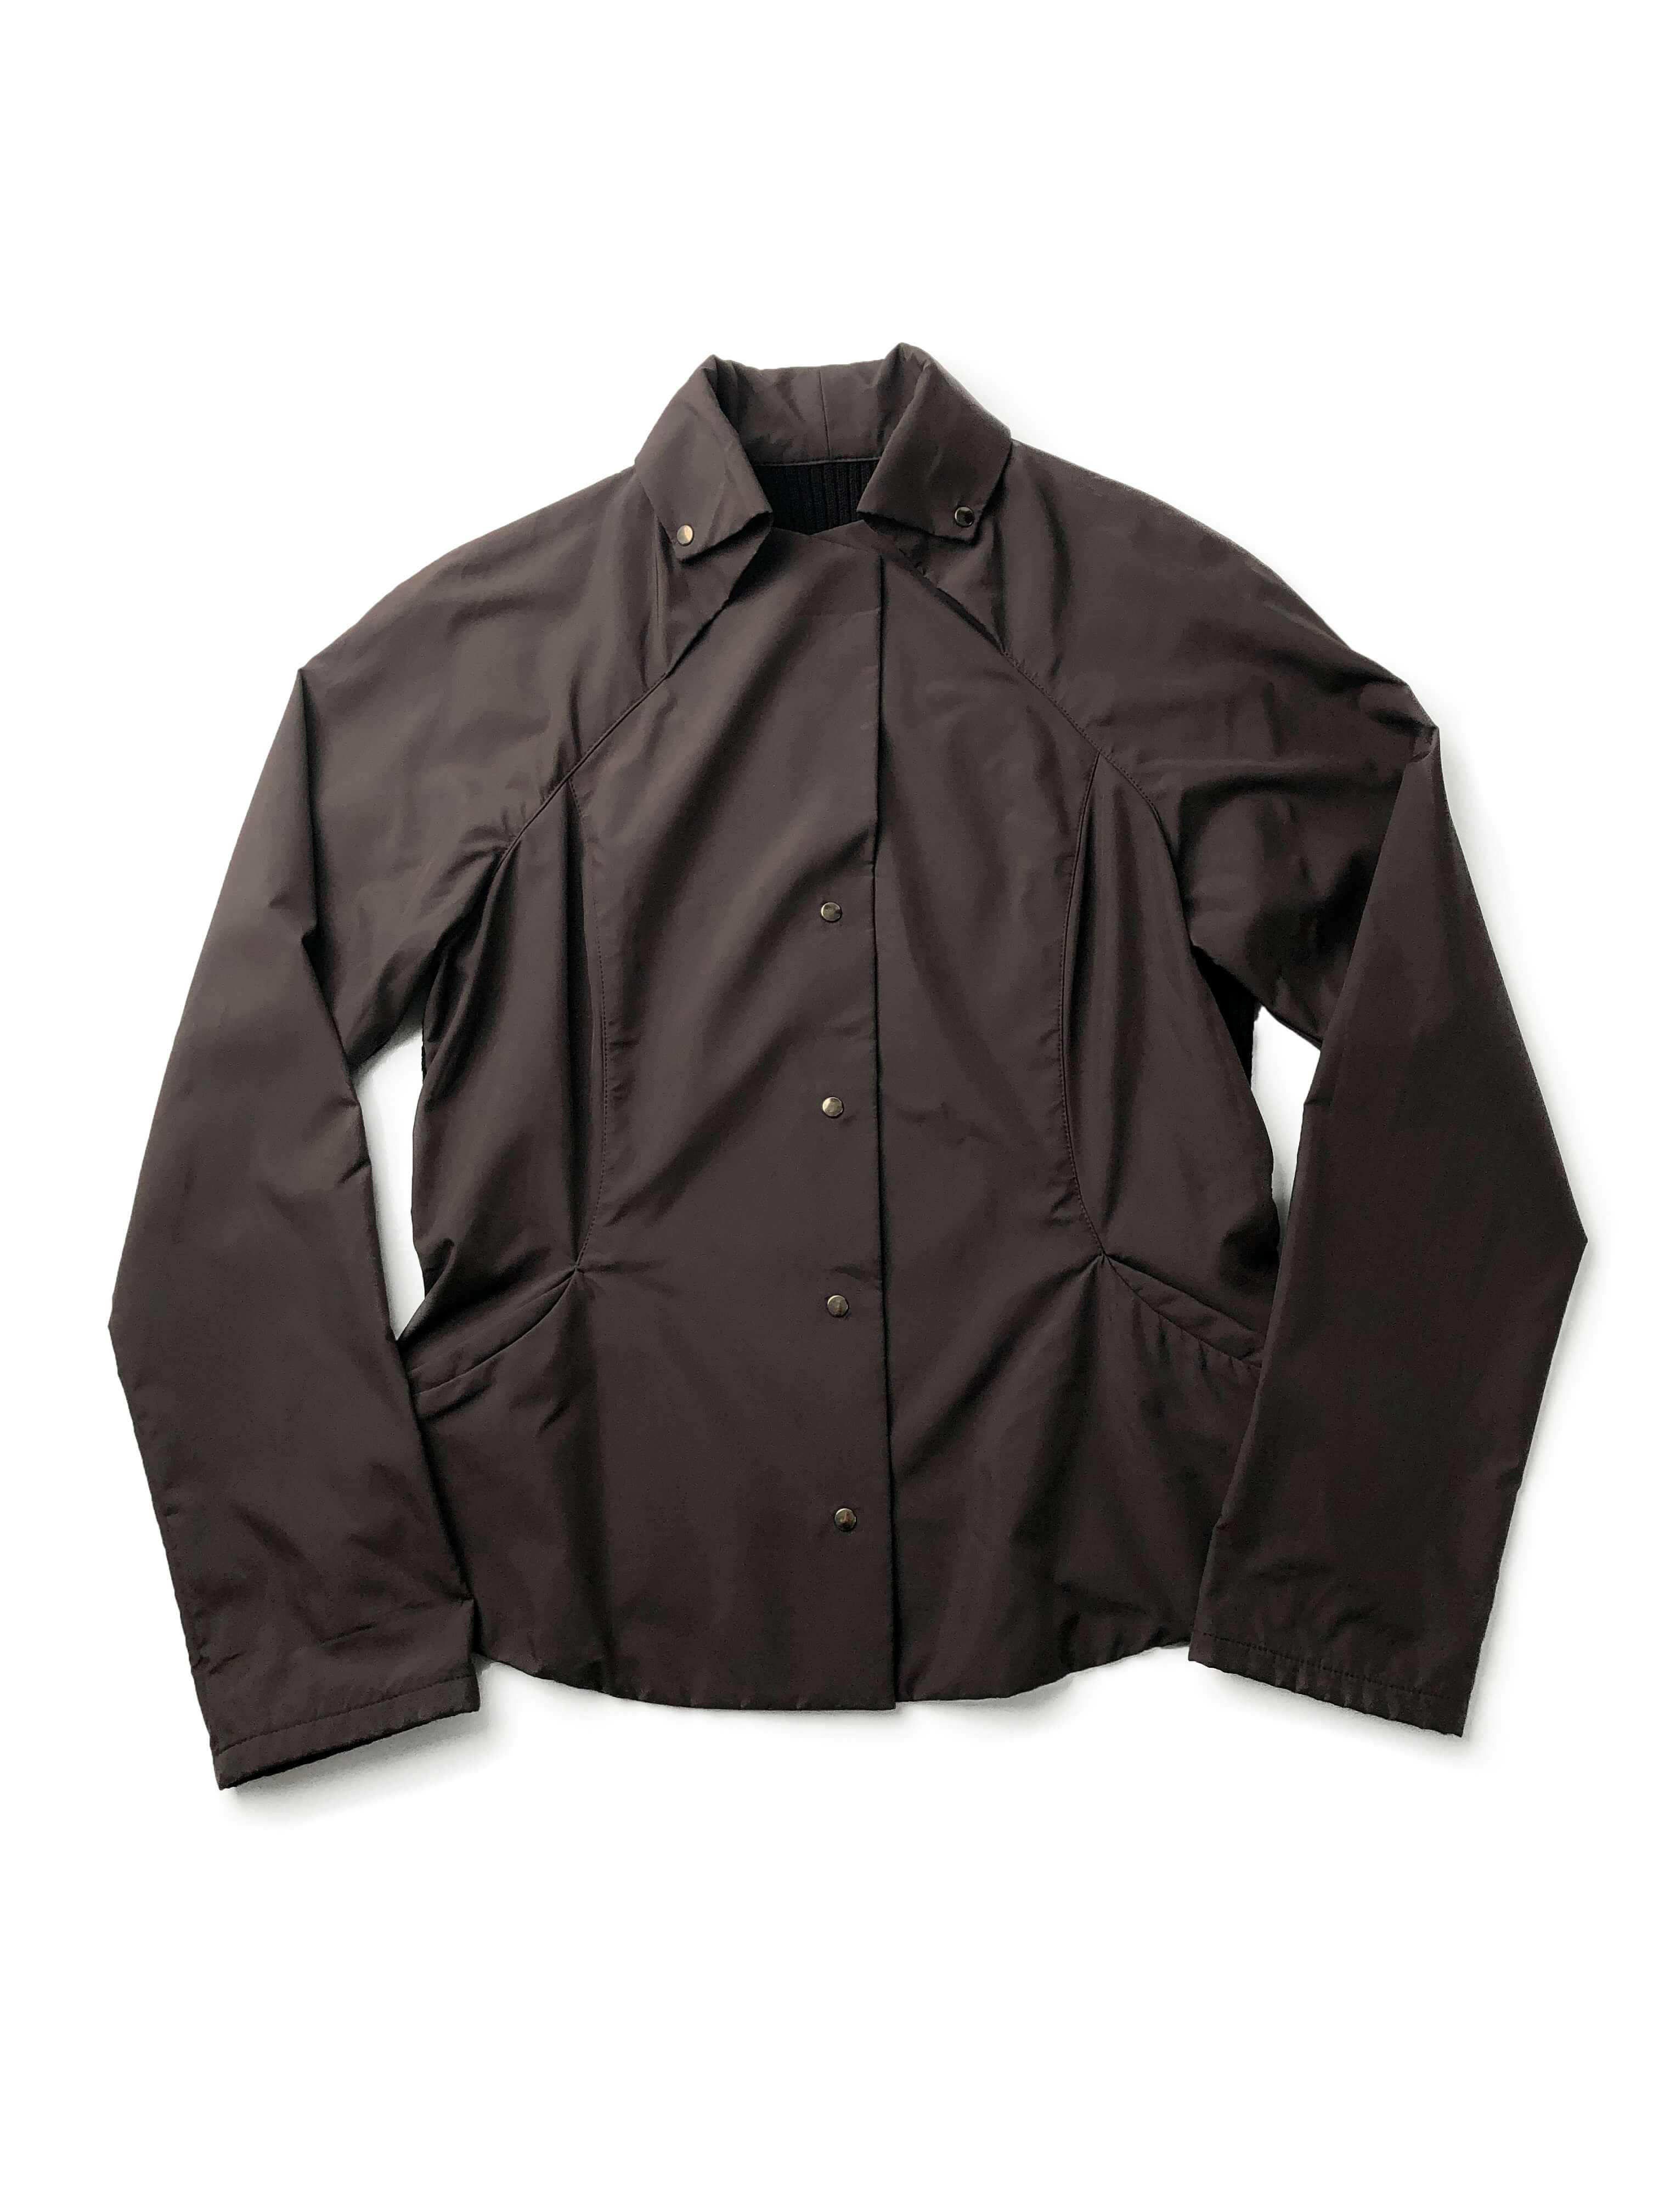 HIROKO KOSHINO 80s shirts jacket